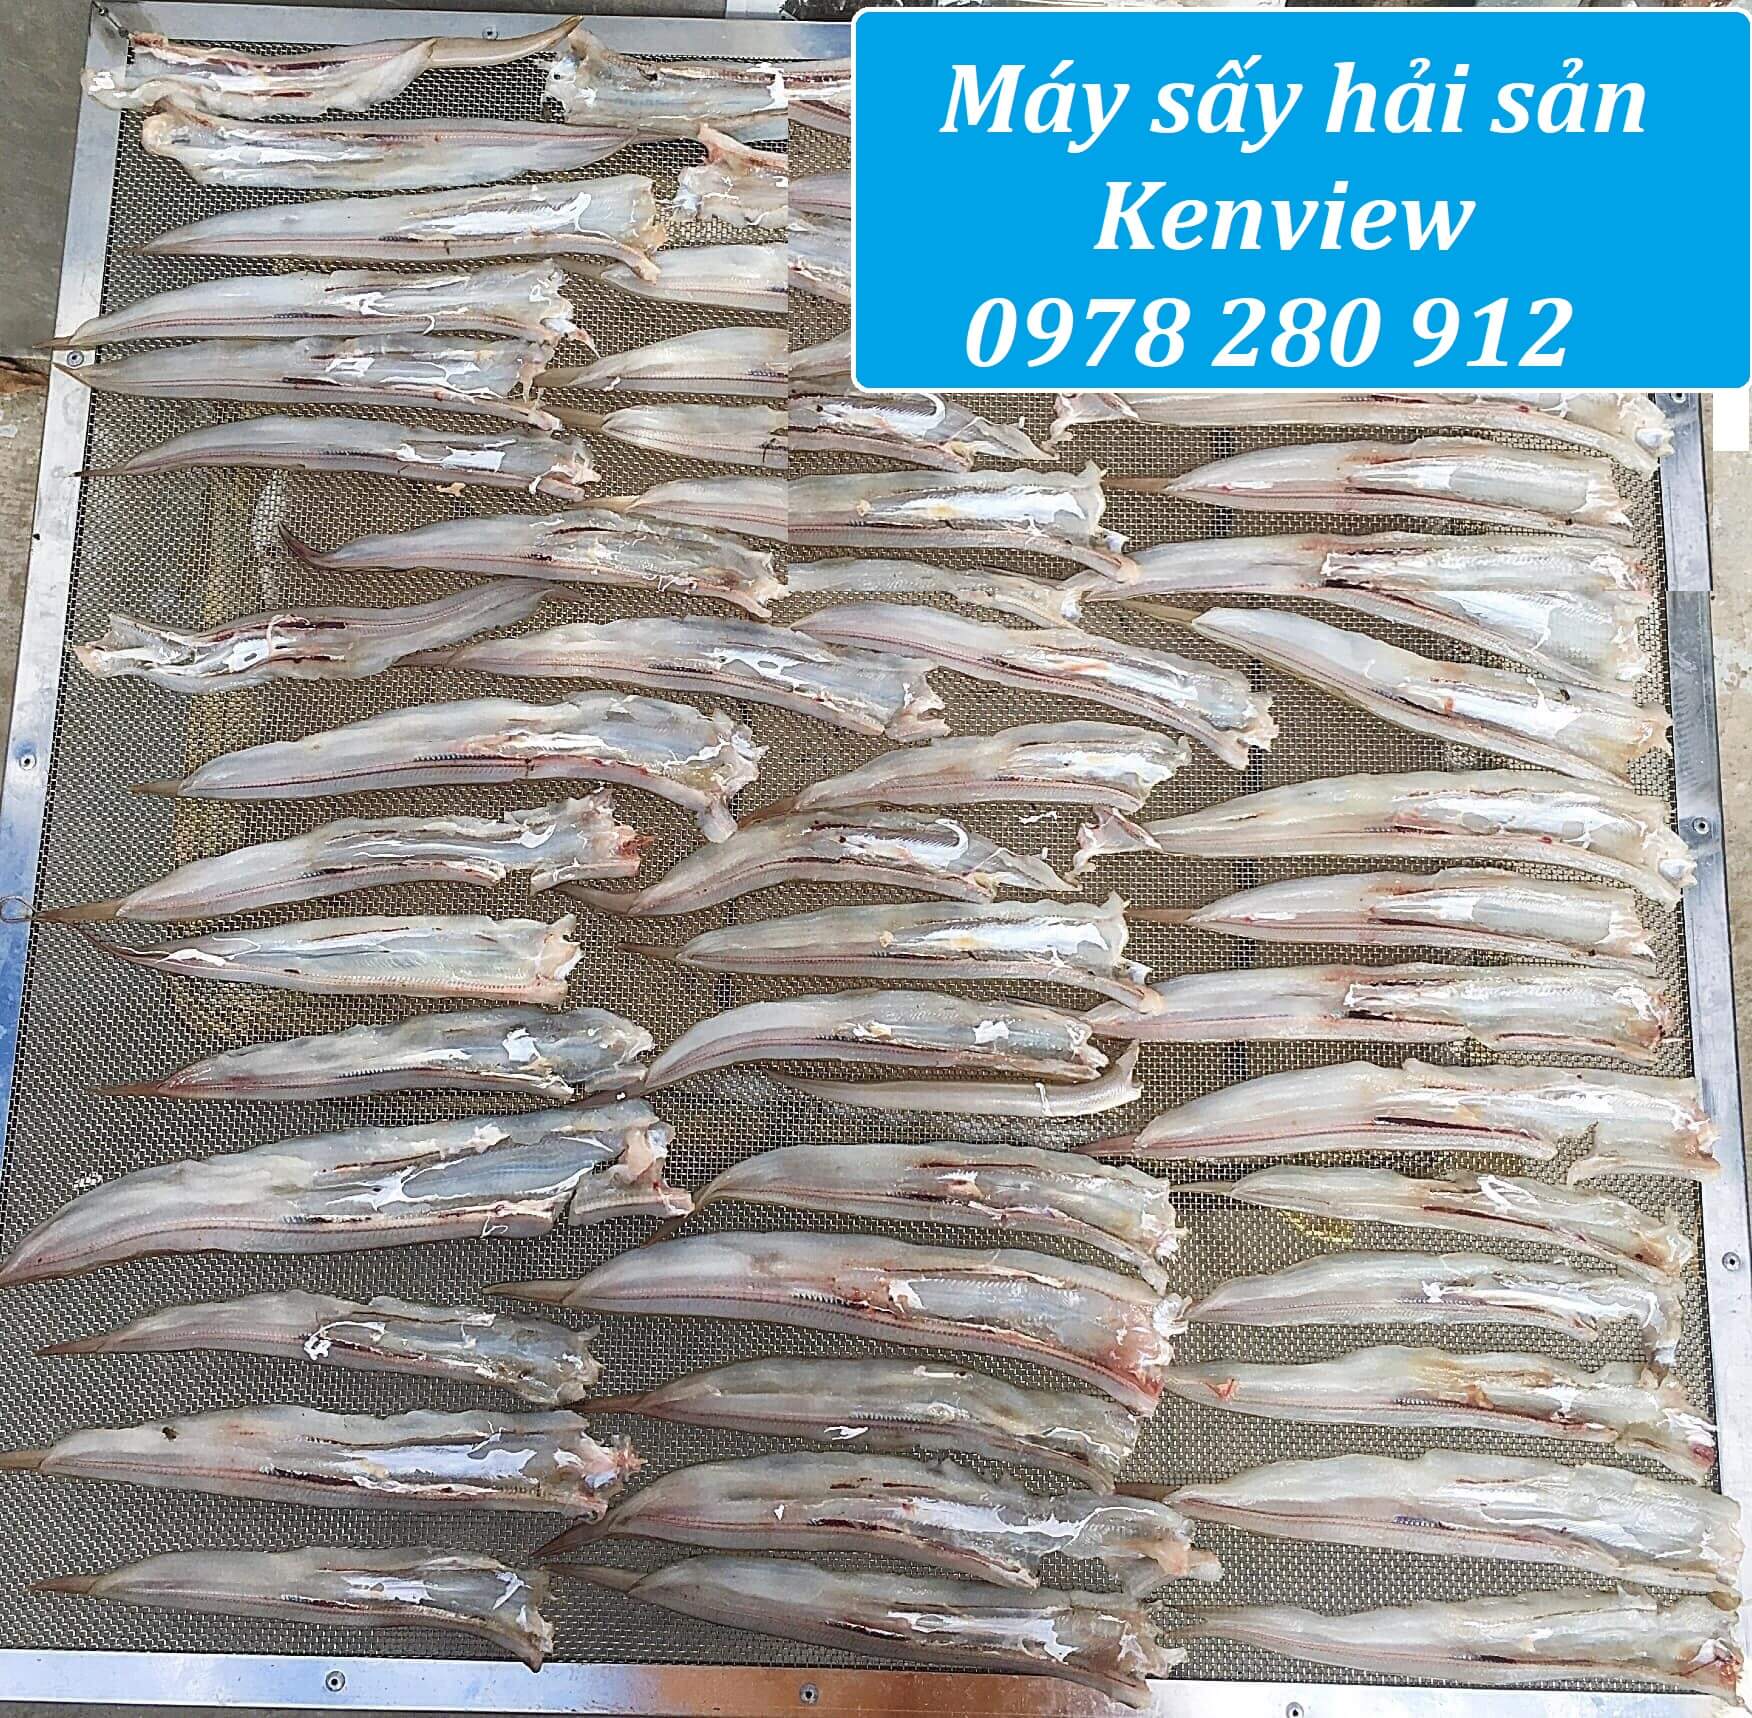 Kenview cung cấp máy sấy cá khô, tôm khô tại Phú Thọ.0978 280 912